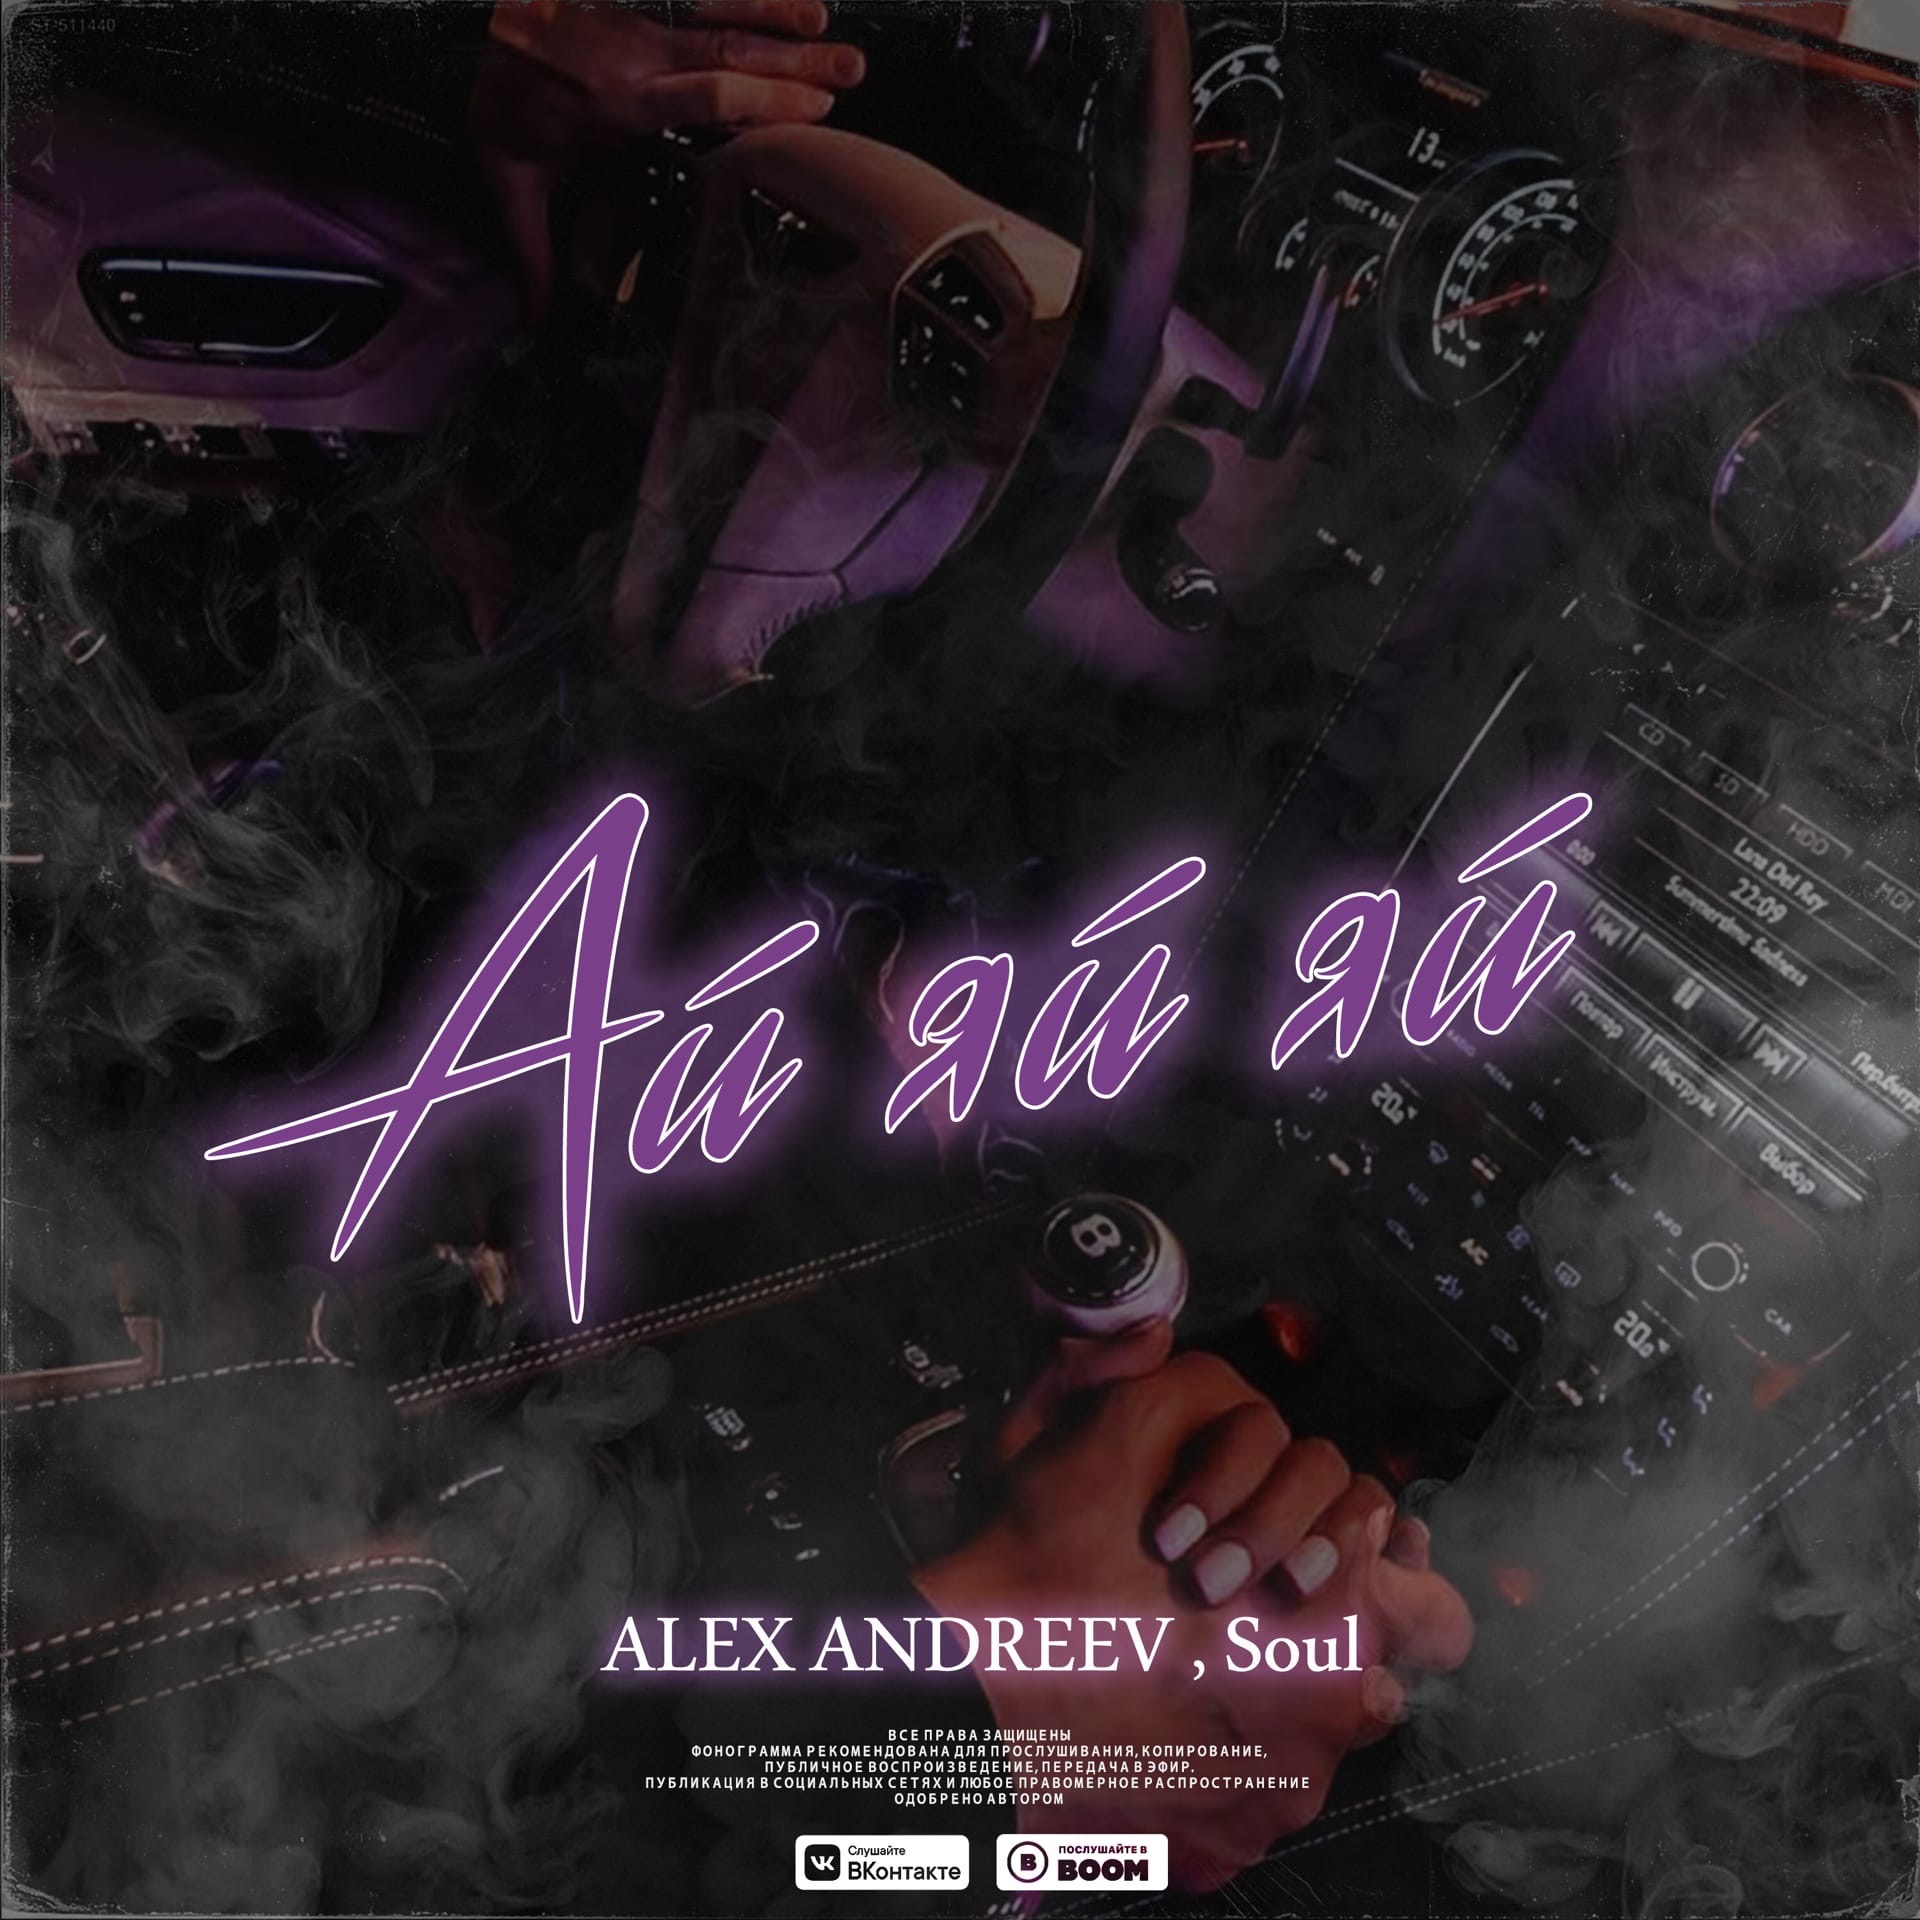 Ай ай ай ооо песня. Alex Andreev Soul ай яй. Премьера Alex Andreev, Soul ай-яй-яй. Алекс Андреев песни.